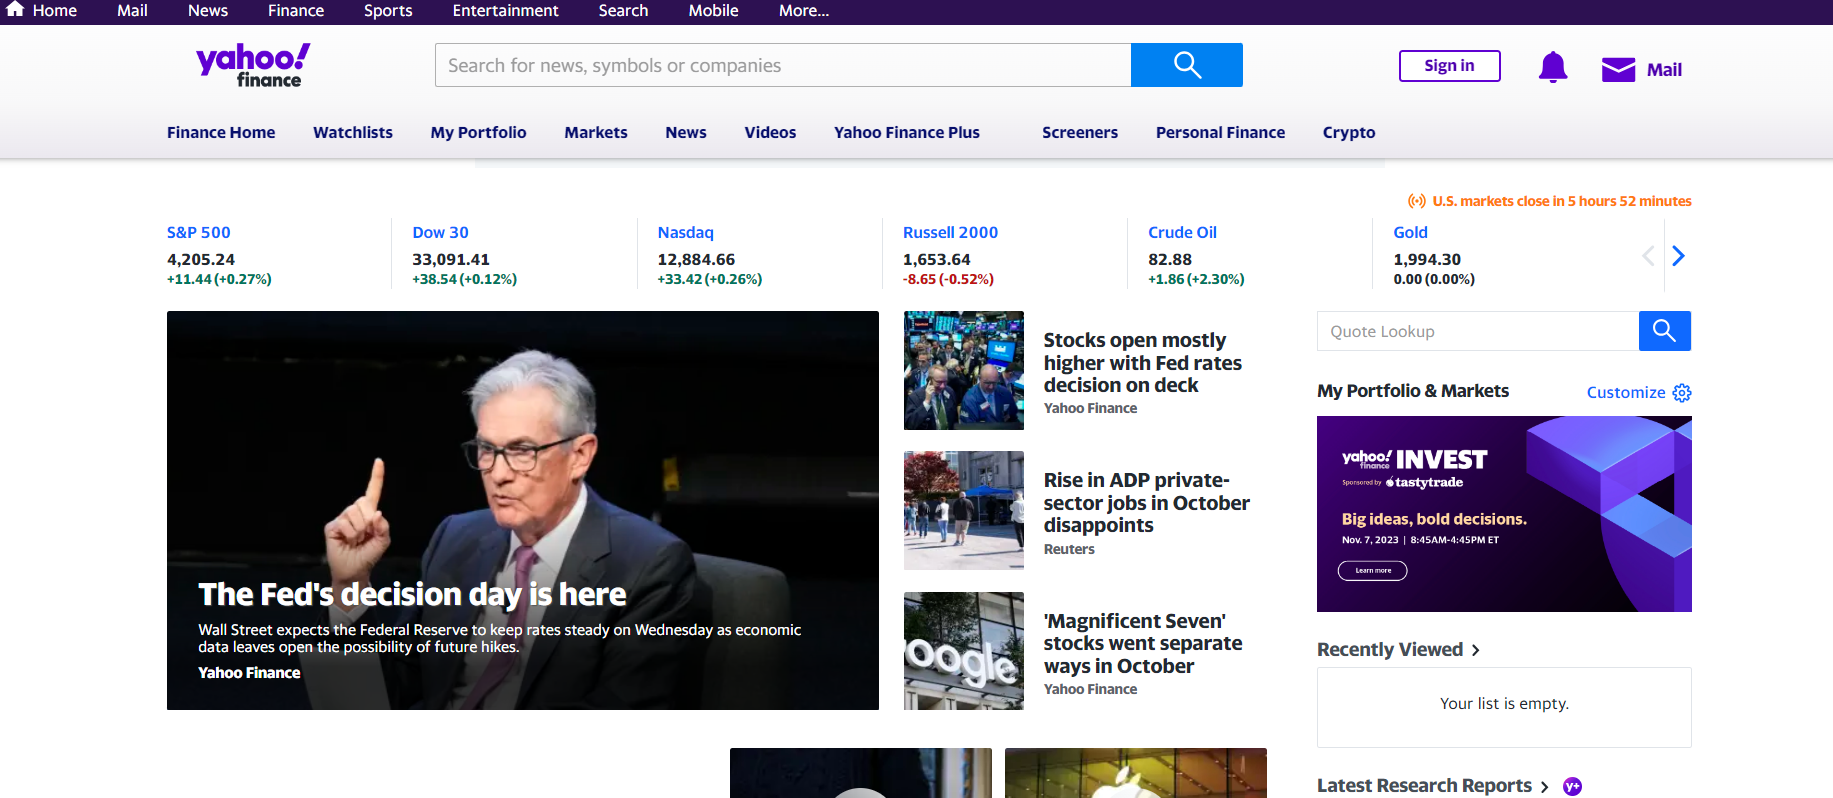 Yahoo Finance main page